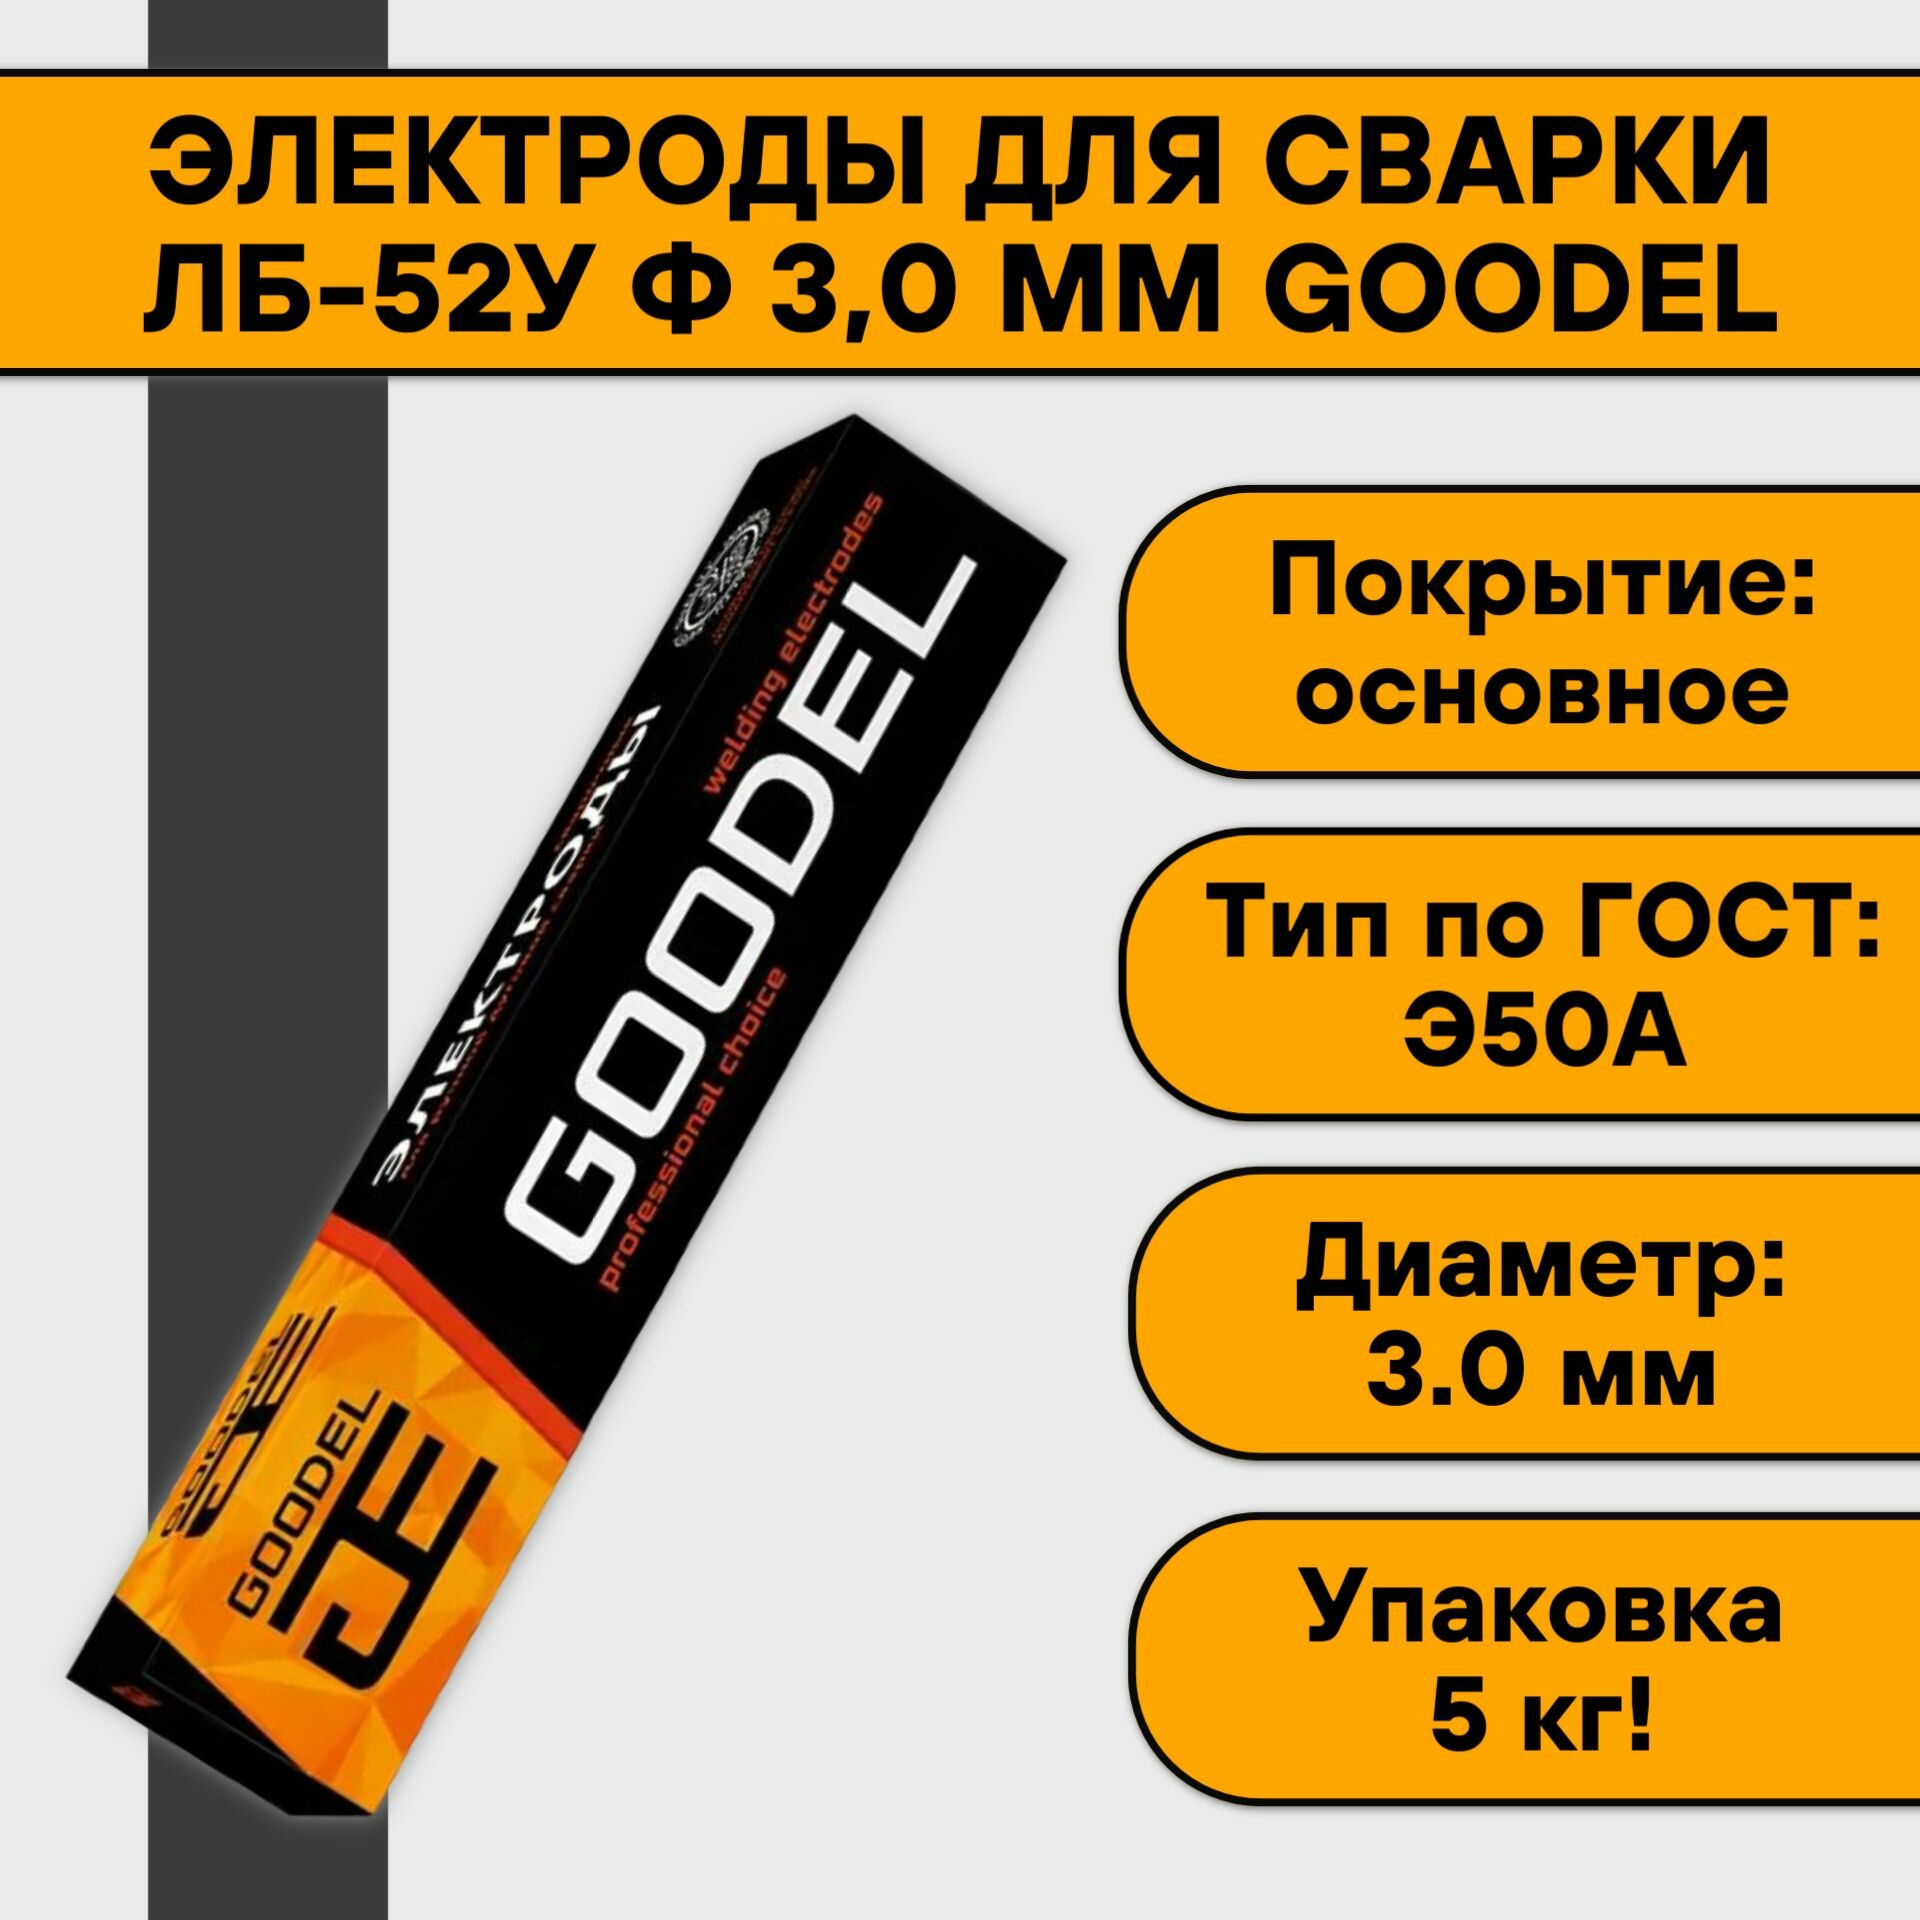 Goodel ЛБ-52У